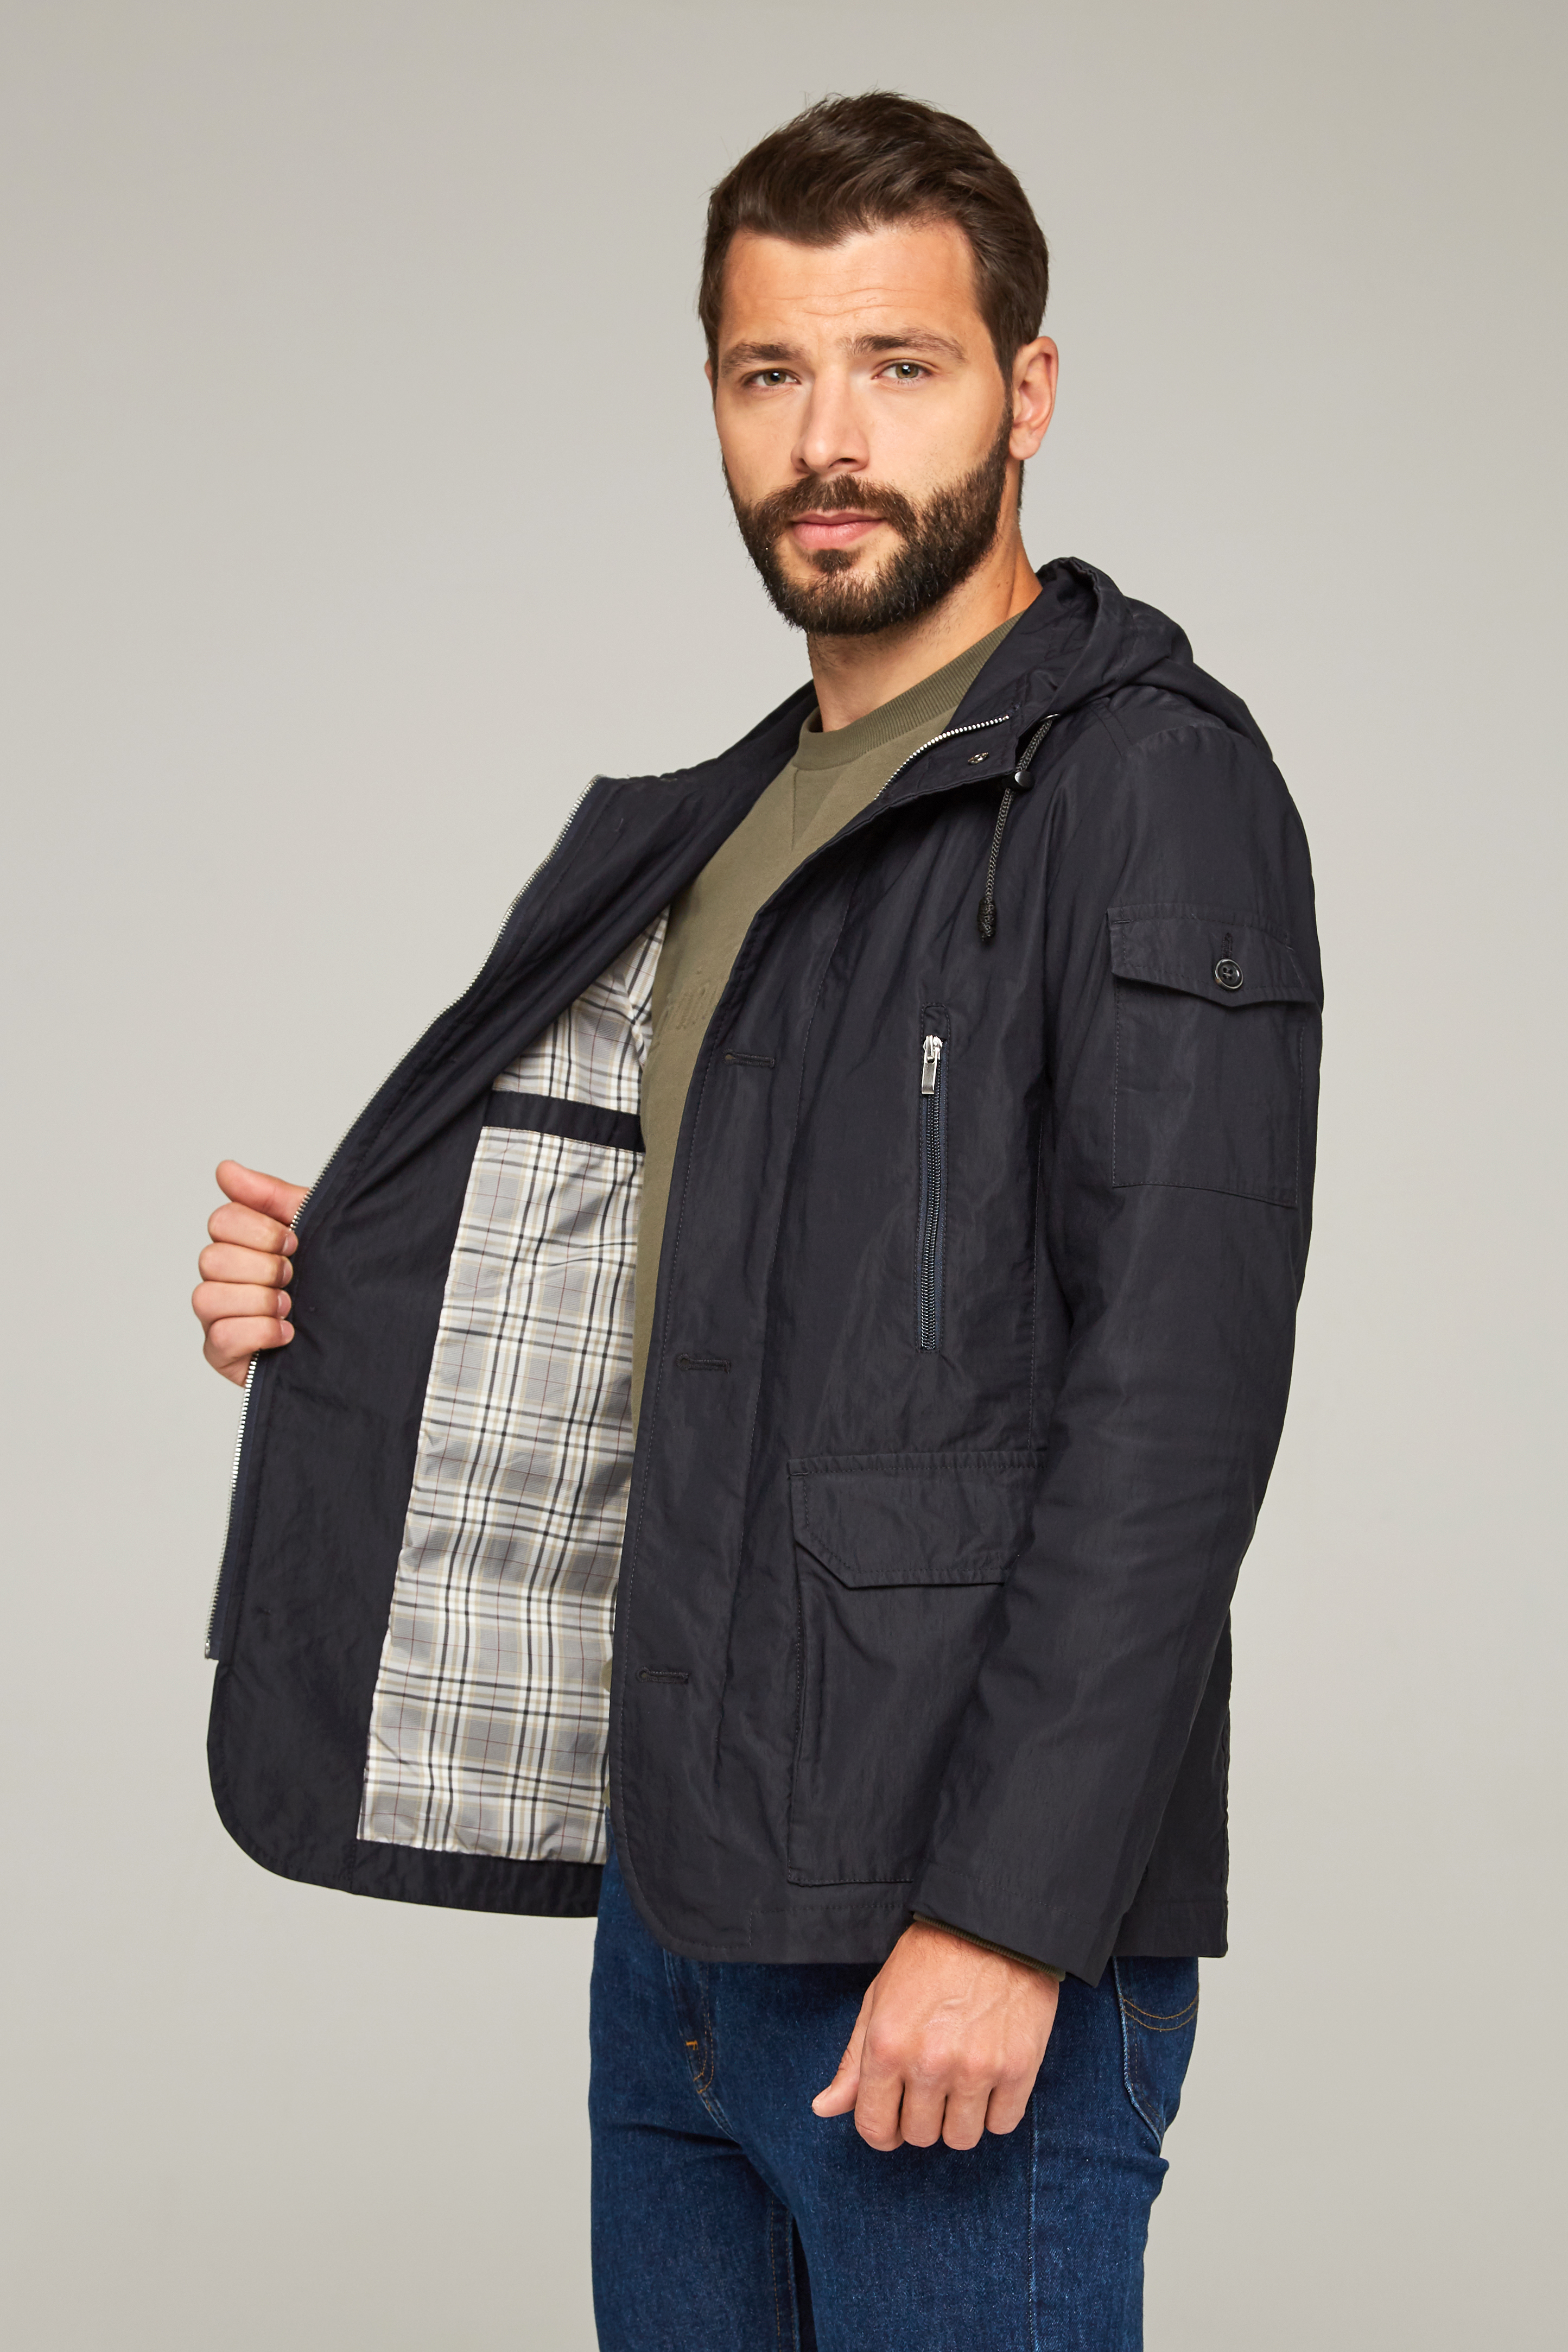 Мужская куртка из текстиля с капюшоном, без отделки